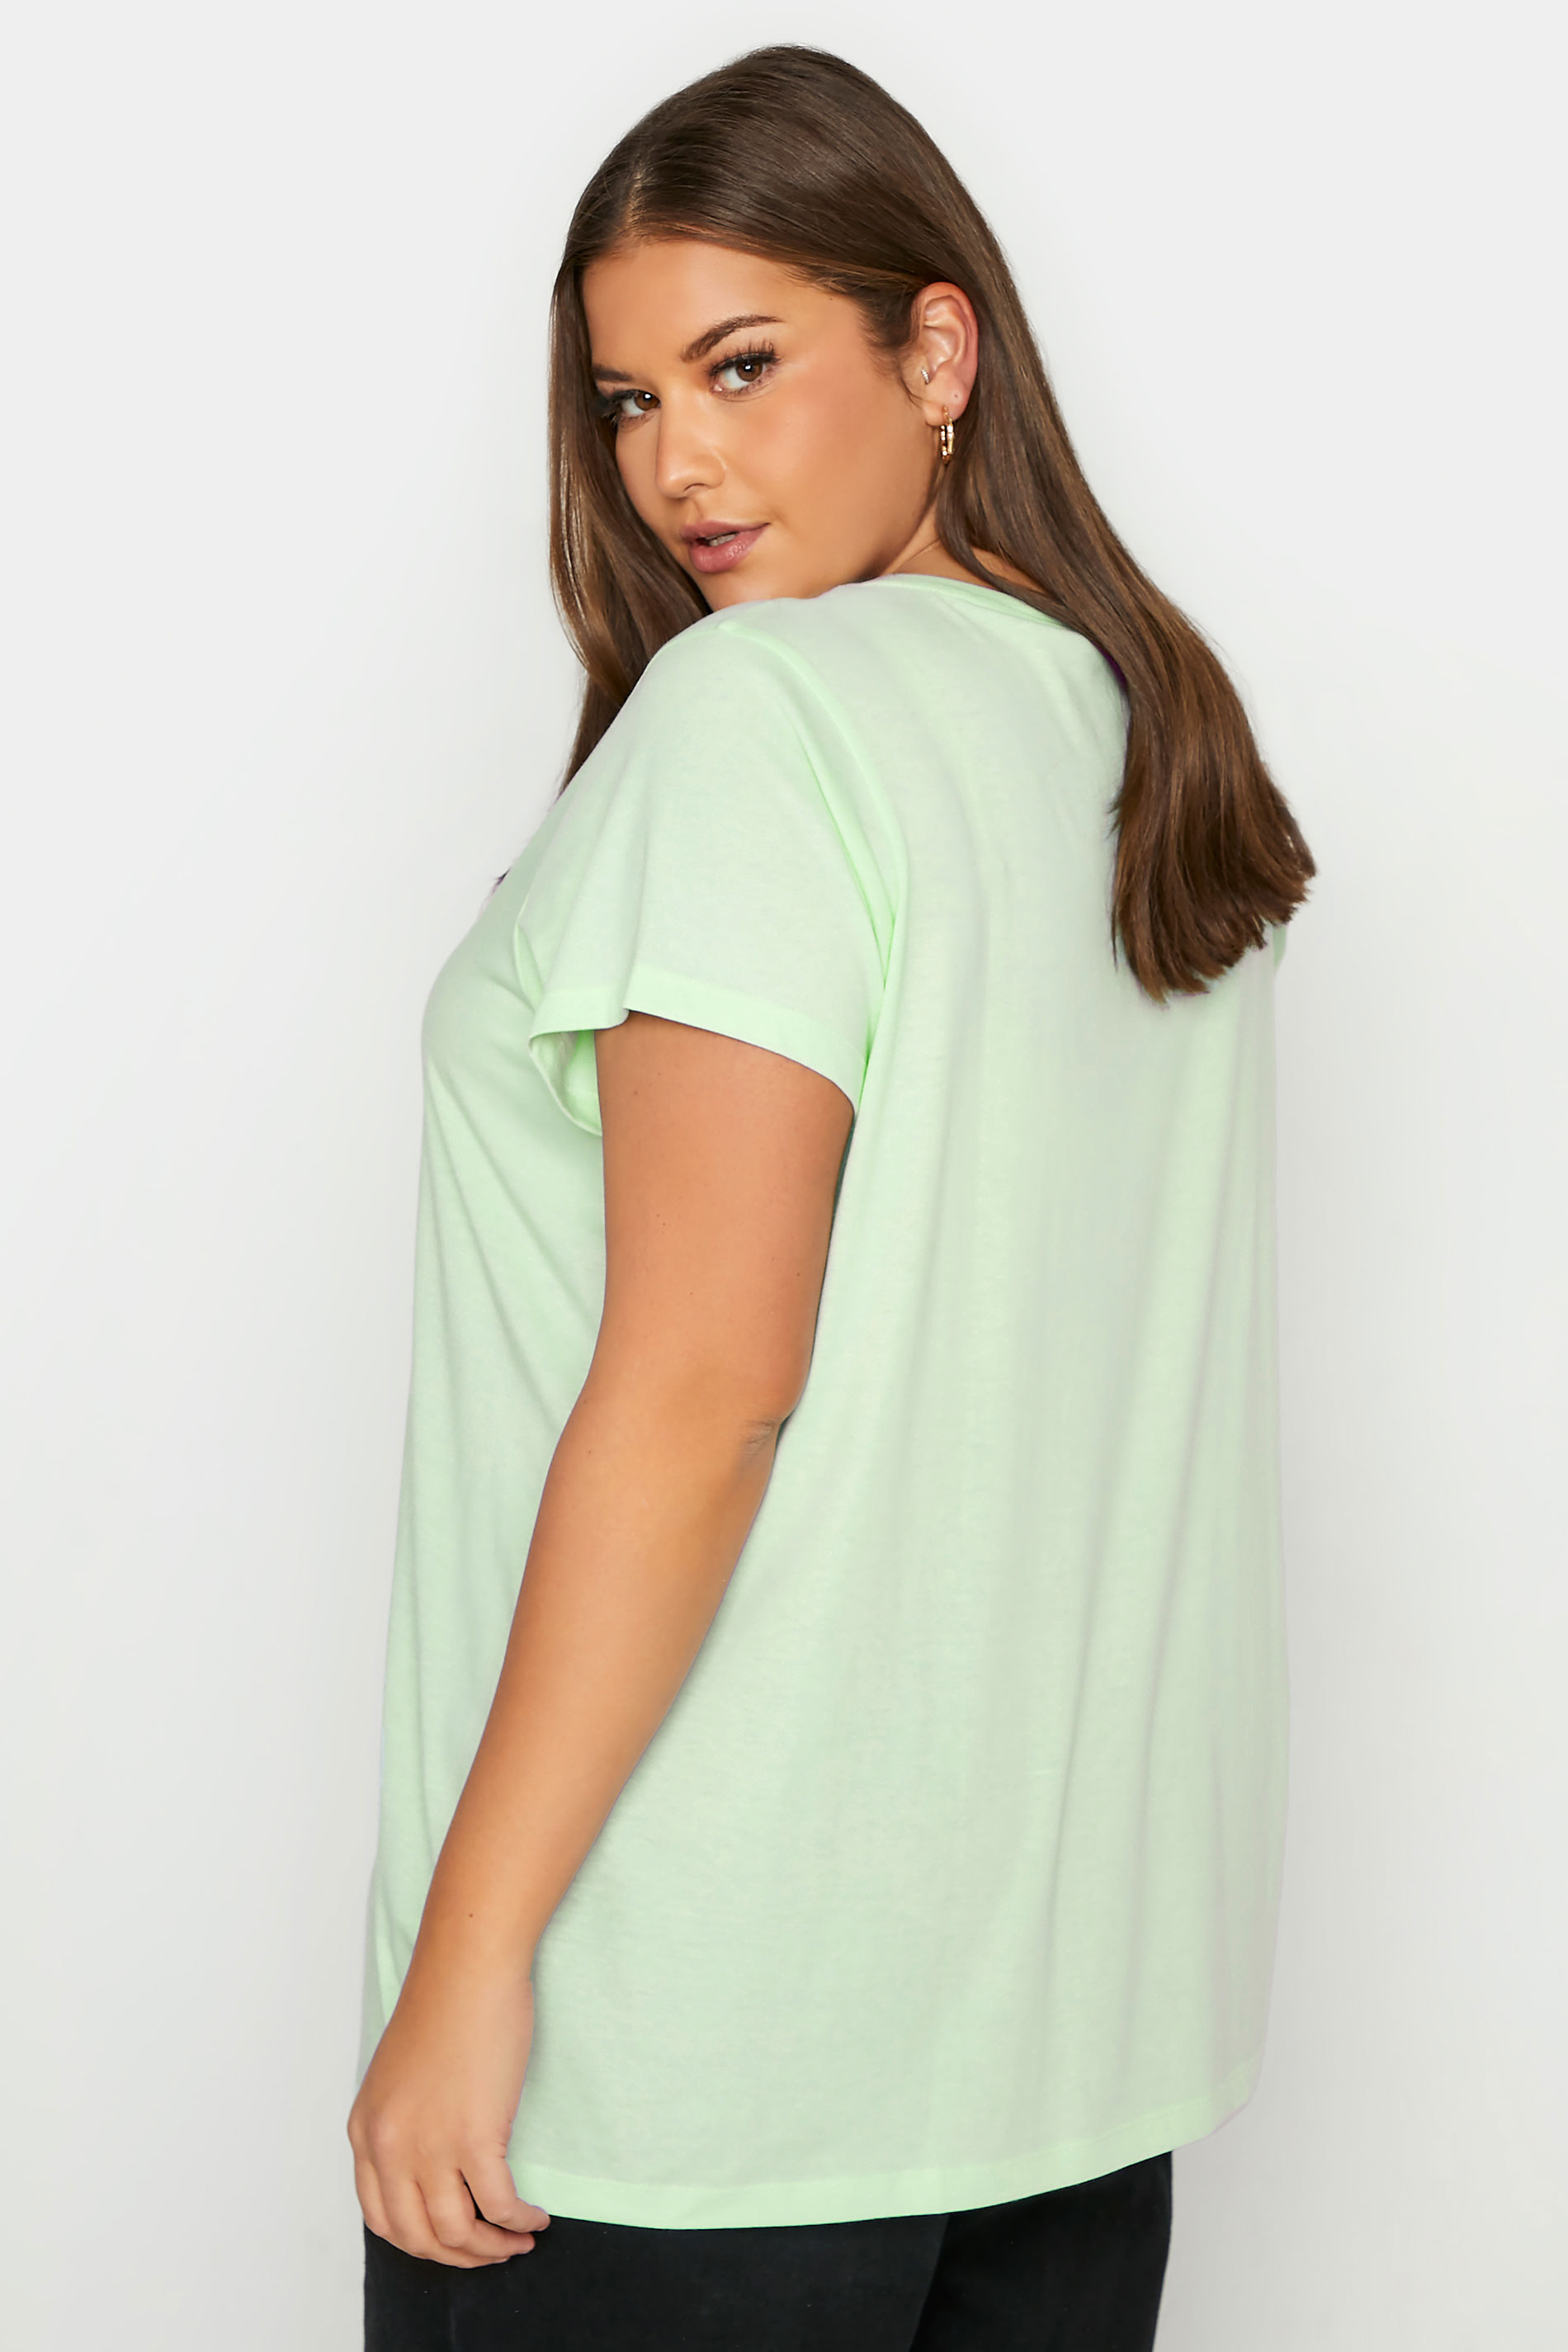 Grande taille  Tops Grande taille  T-Shirts Basiques & Débardeurs | T-Shirt Vert Citron en Jersey - GI63553